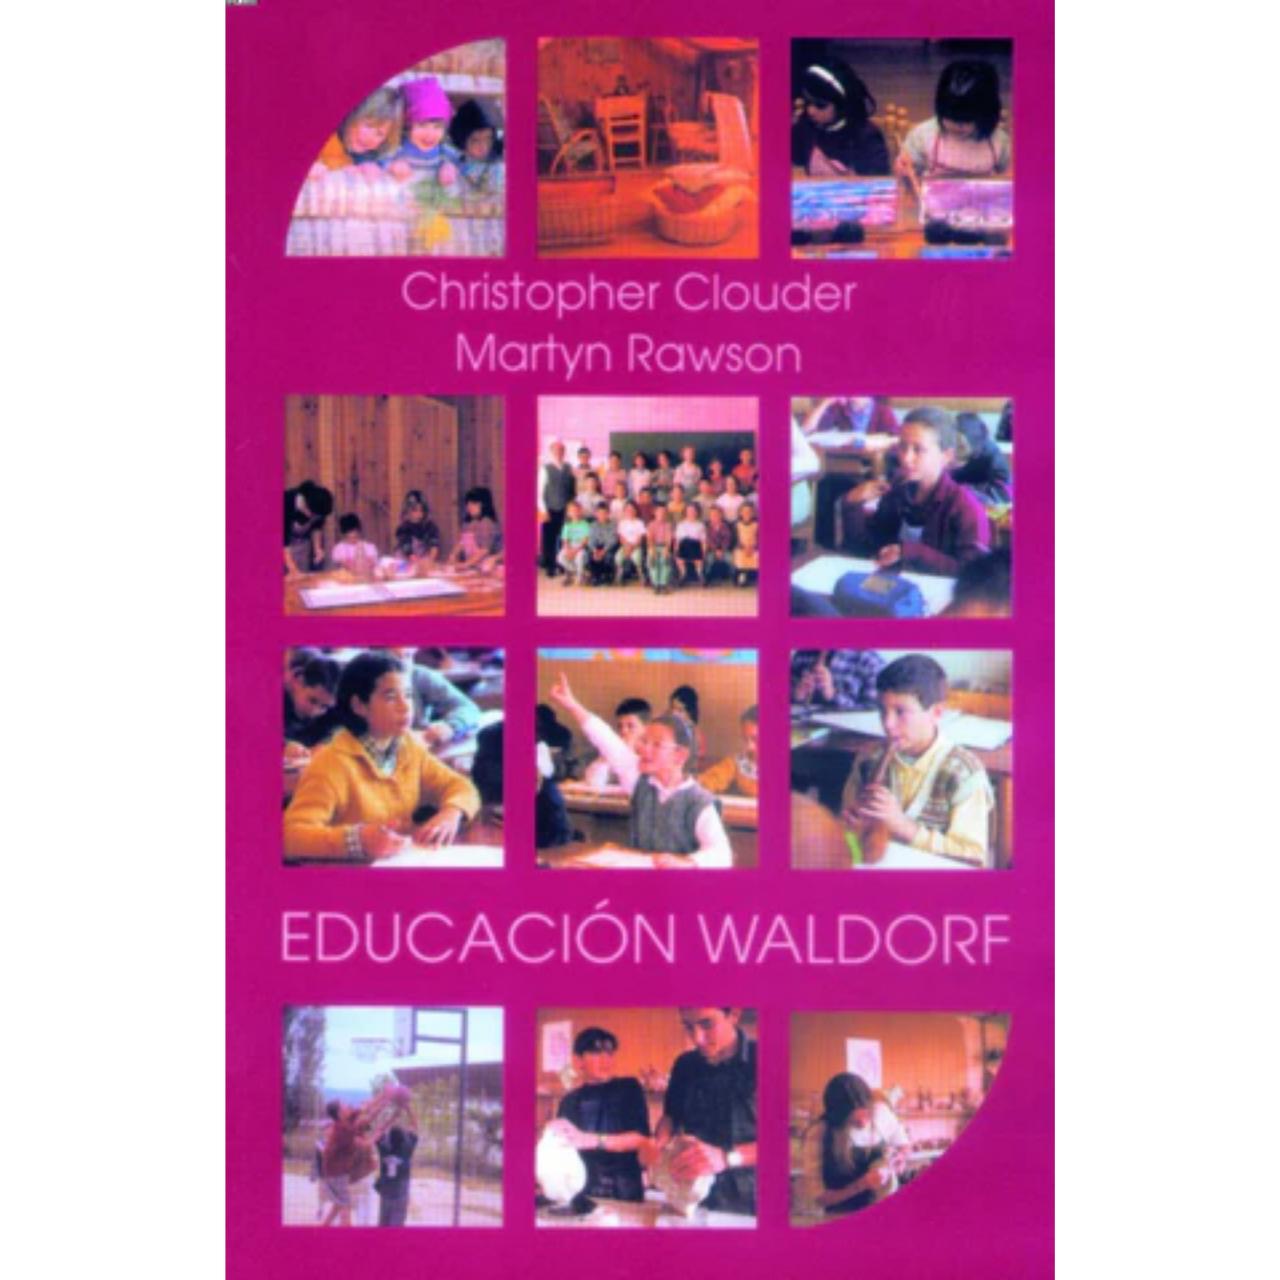 Educación Waldorf, ideas de Rudolf Steiner en práctica